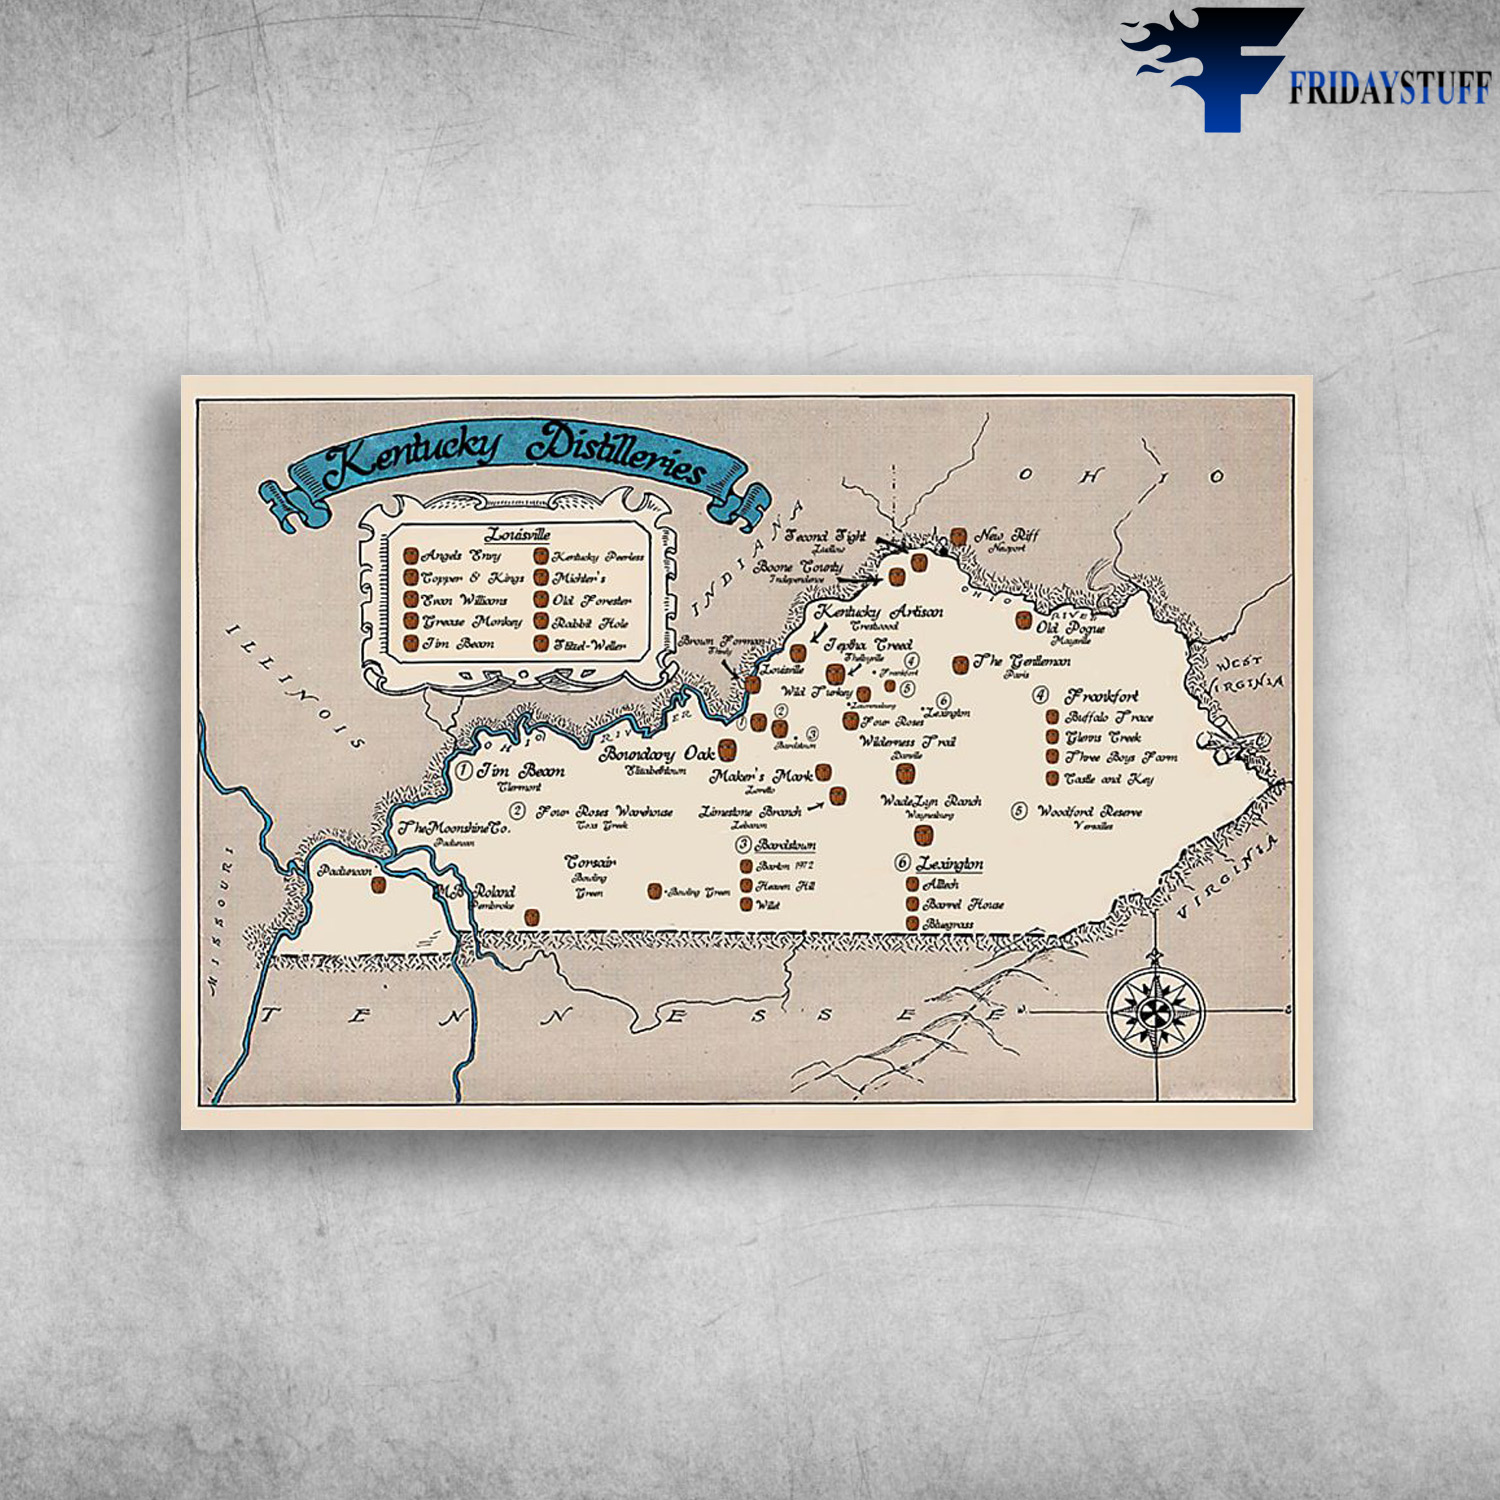 The Map Of Kentucky Distilleries